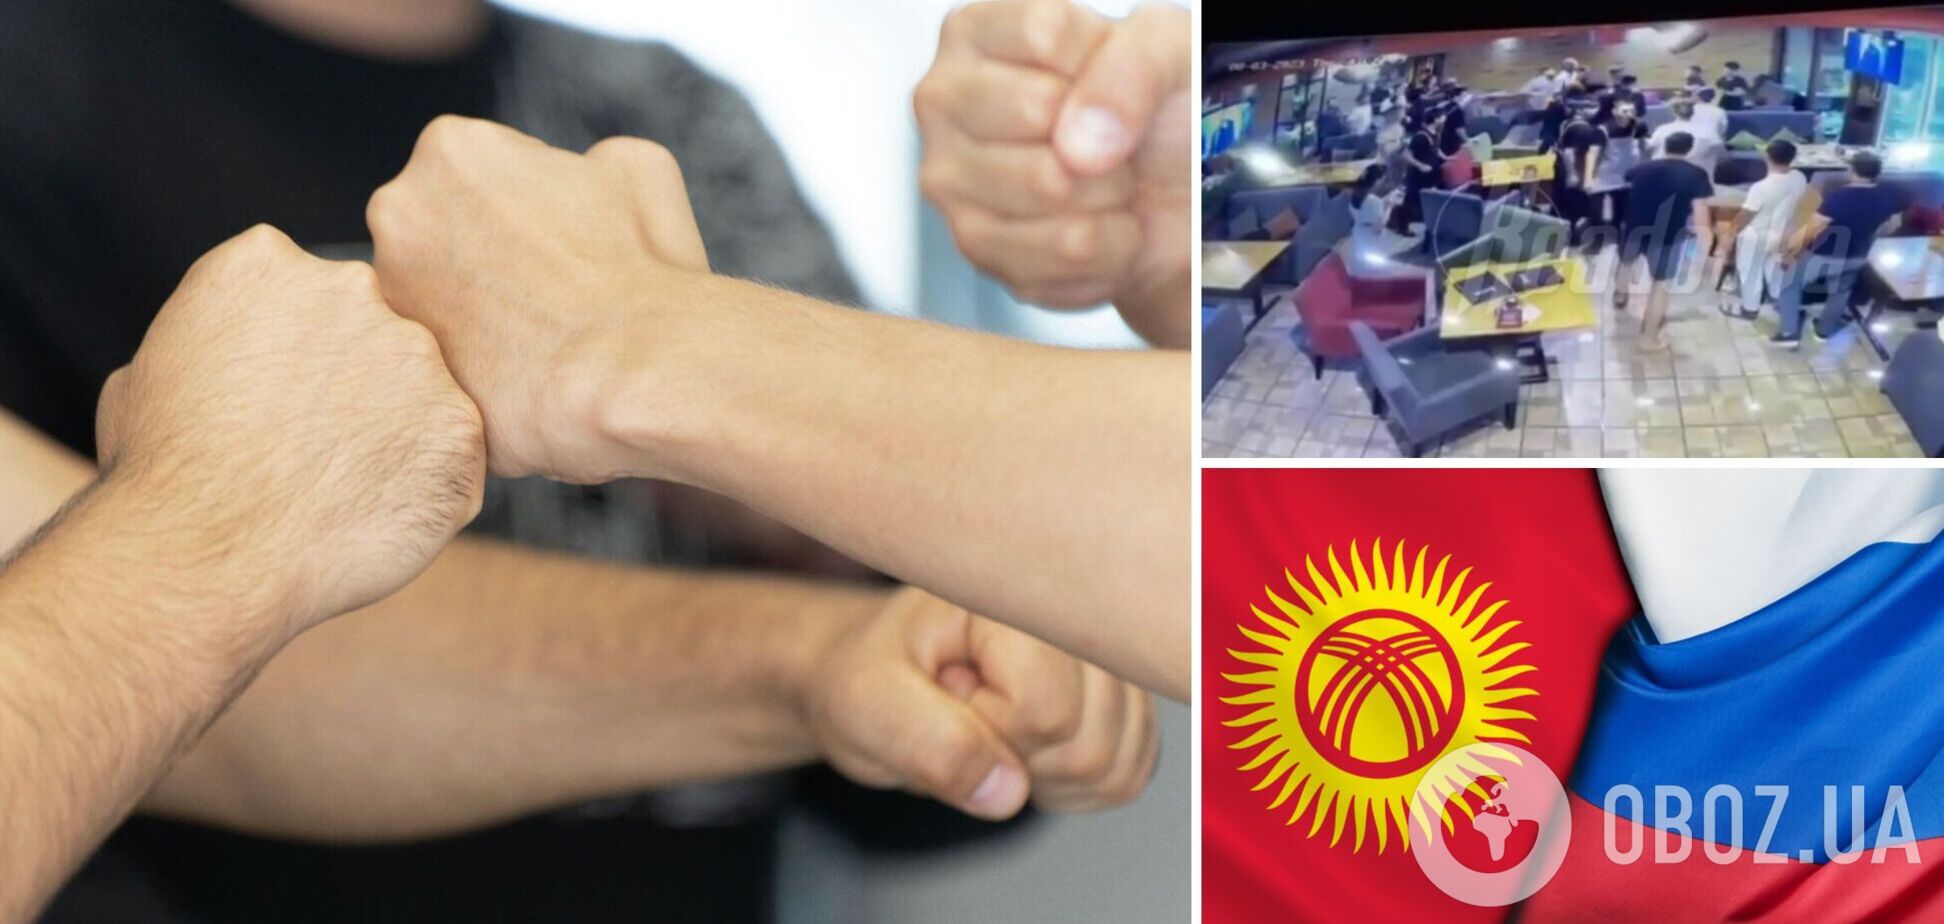 У Киргизстані росіян побили в кафе: тепер ті скаржаться, що їм страшно вийти на вулицю. Відео 